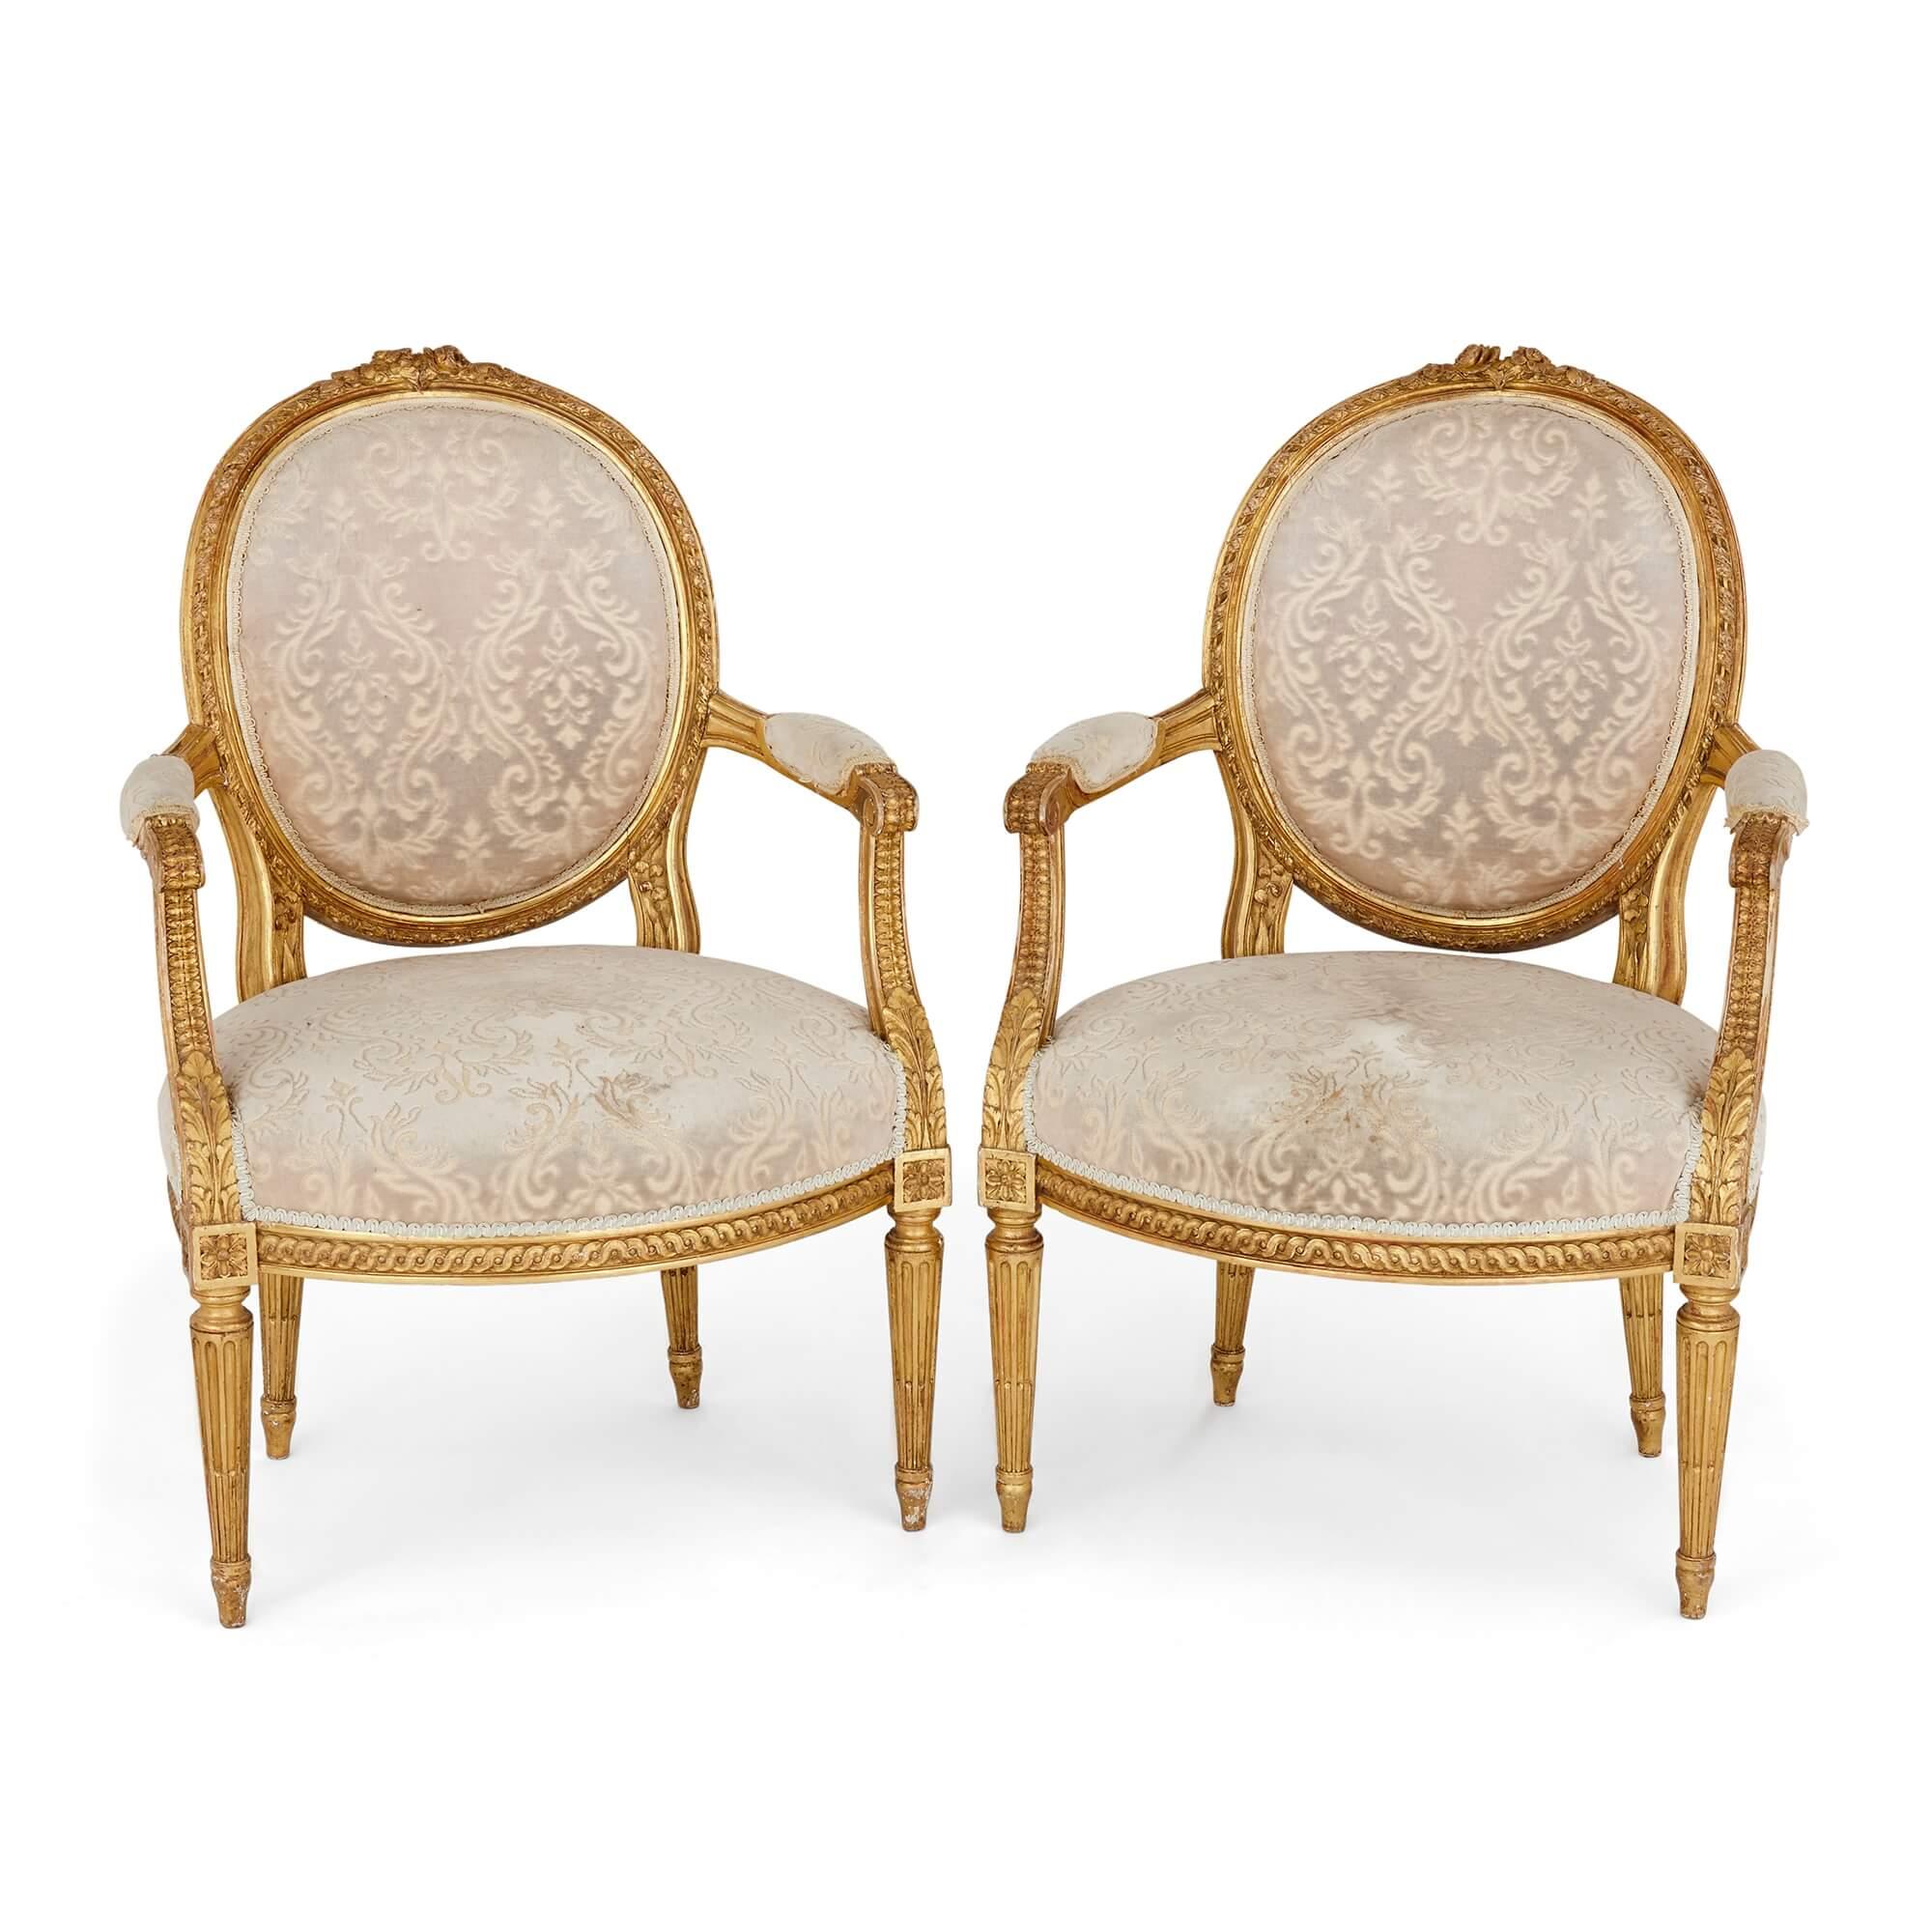 Un ensemble de quatre fauteuils de style Louis XVI en bois doré
Français, Début du 20e siècle
Mesures : Hauteur 92 cm, largeur 60 cm, profondeur 55 cm

Ces magnifiques fauteuils - des fauteuils à côtés ouverts et à accoudoirs rembourrés,